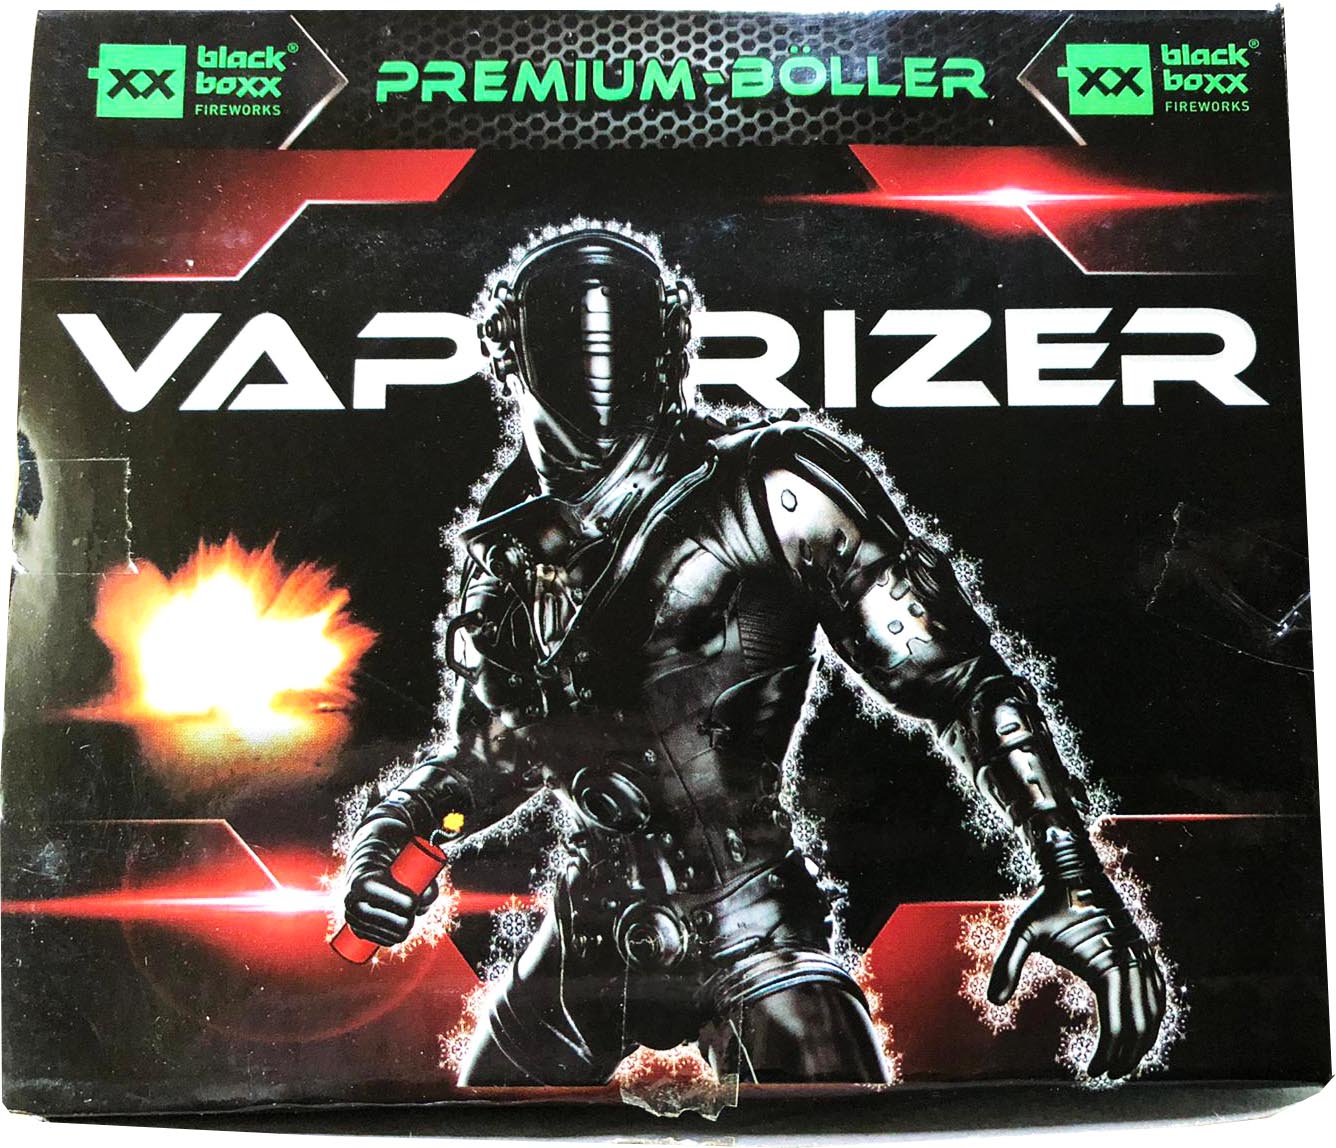 Blackboxx | Vaporizer